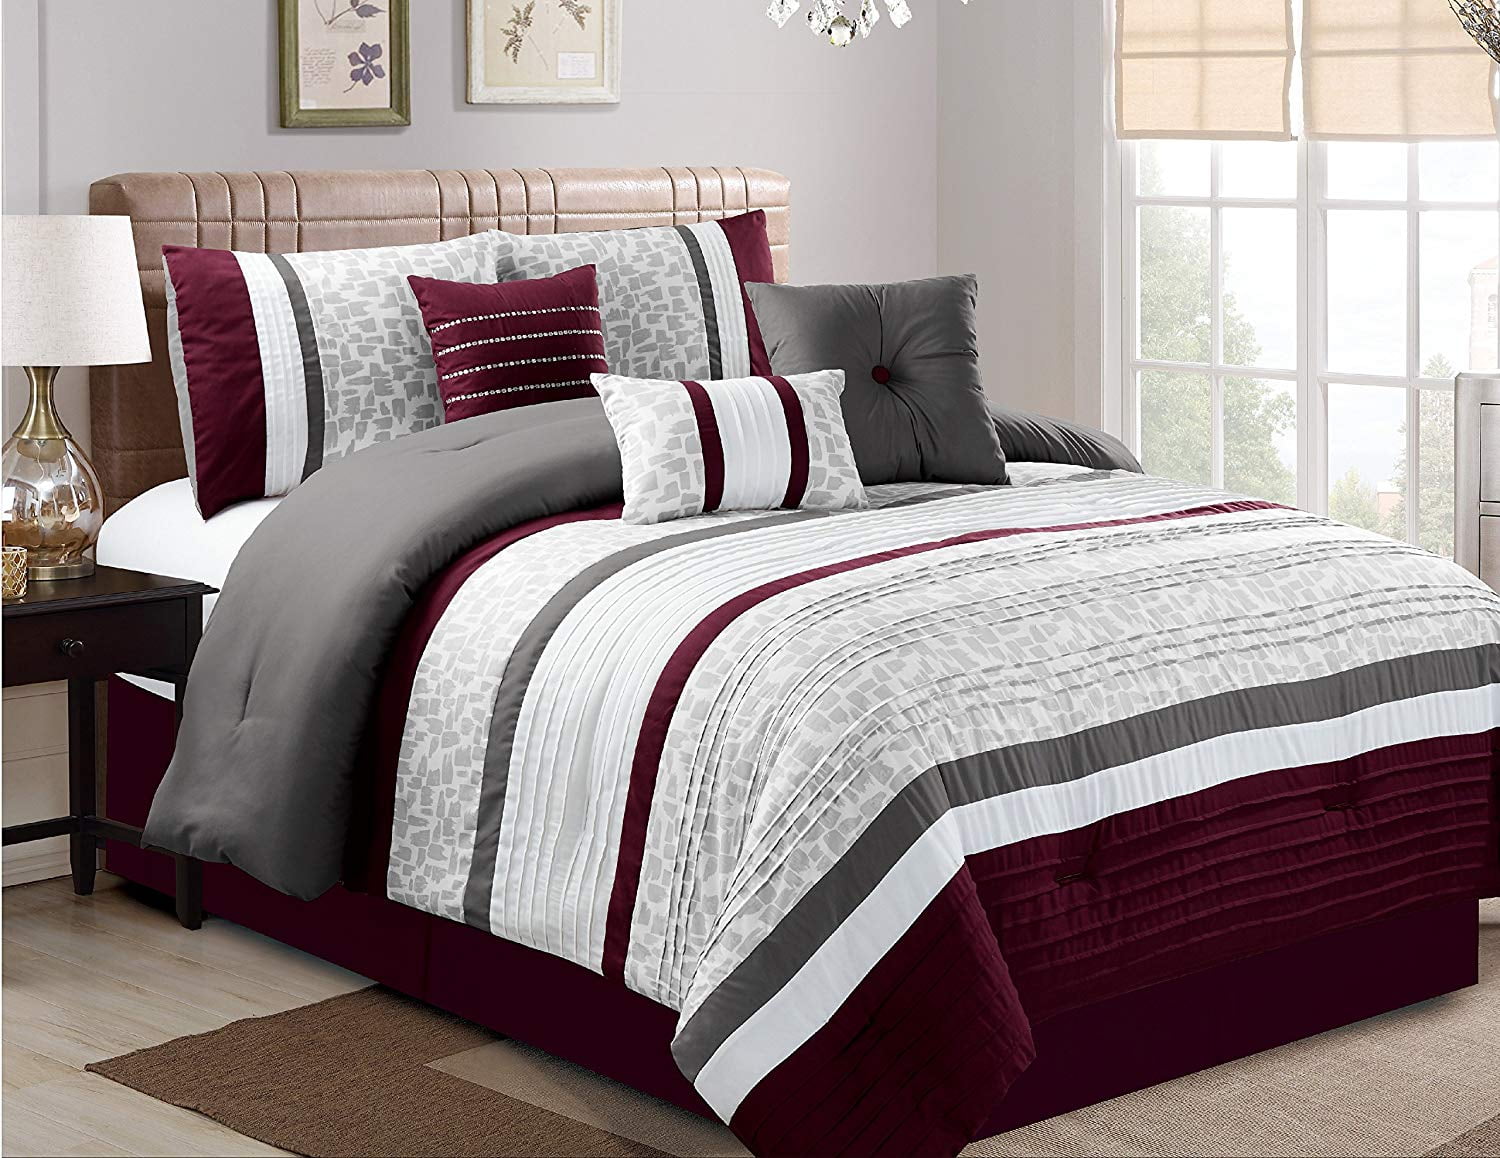 HGMart Bedding Comforter Set 7 Piece Luxury Striped Microfiber Bedding Sets Oversized Bedroom